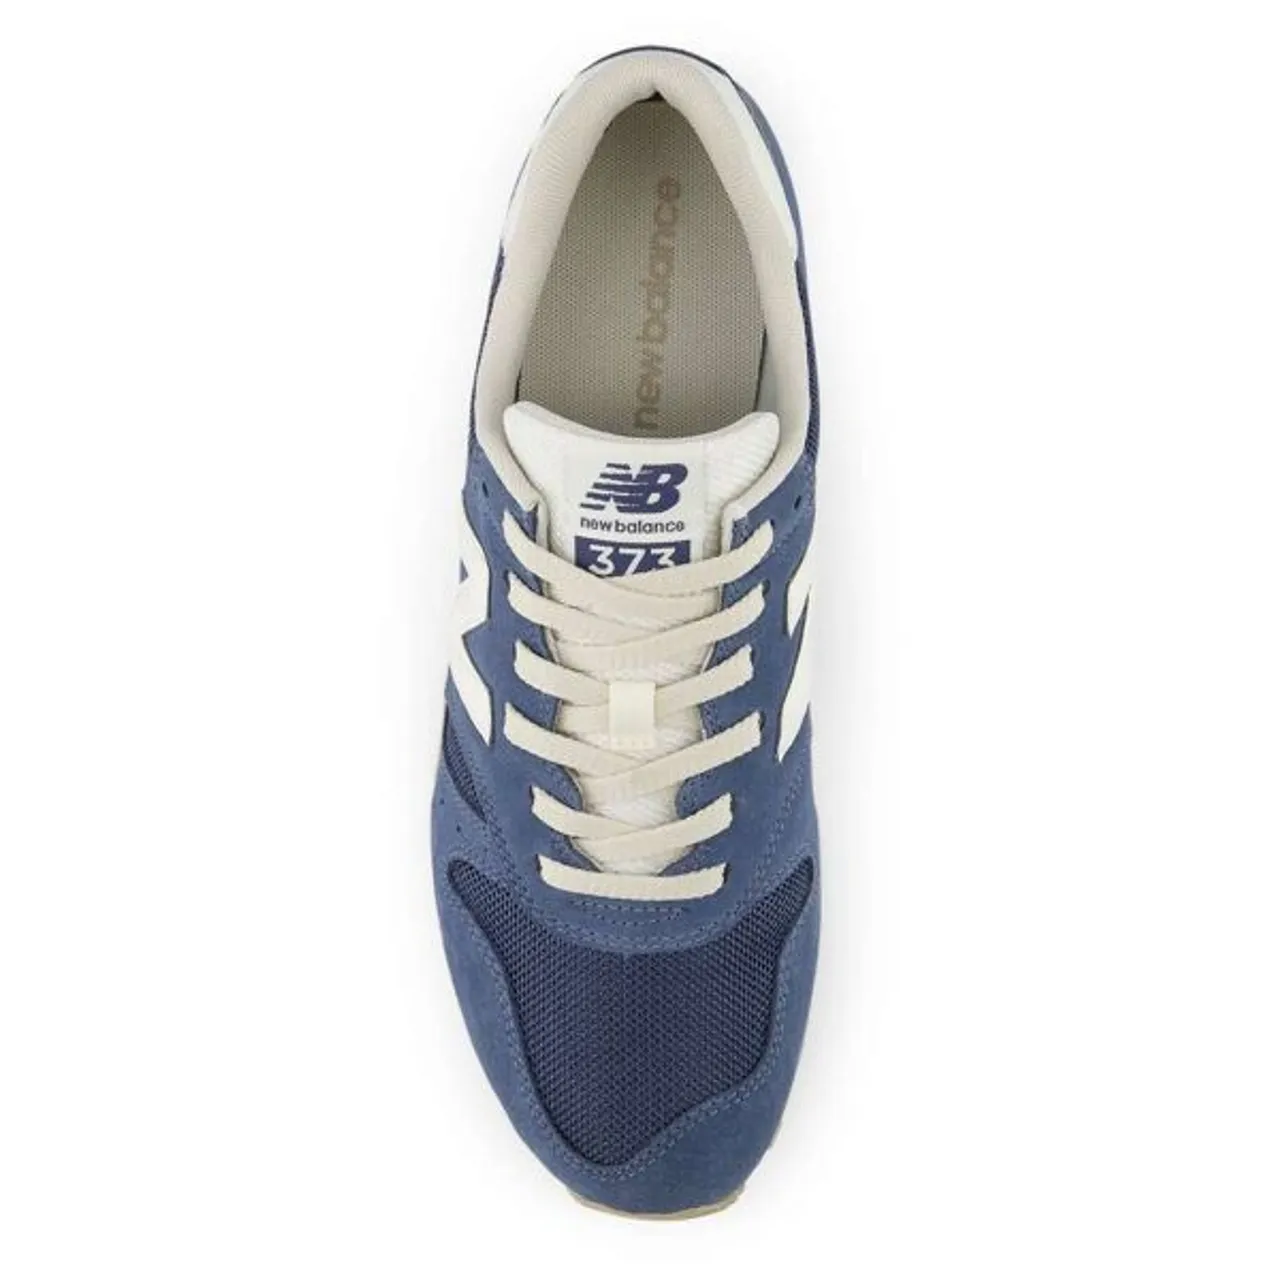 Sneaker NEW BALANCE "M373" Gr. 43, blau Schuhe Stoffschuhe